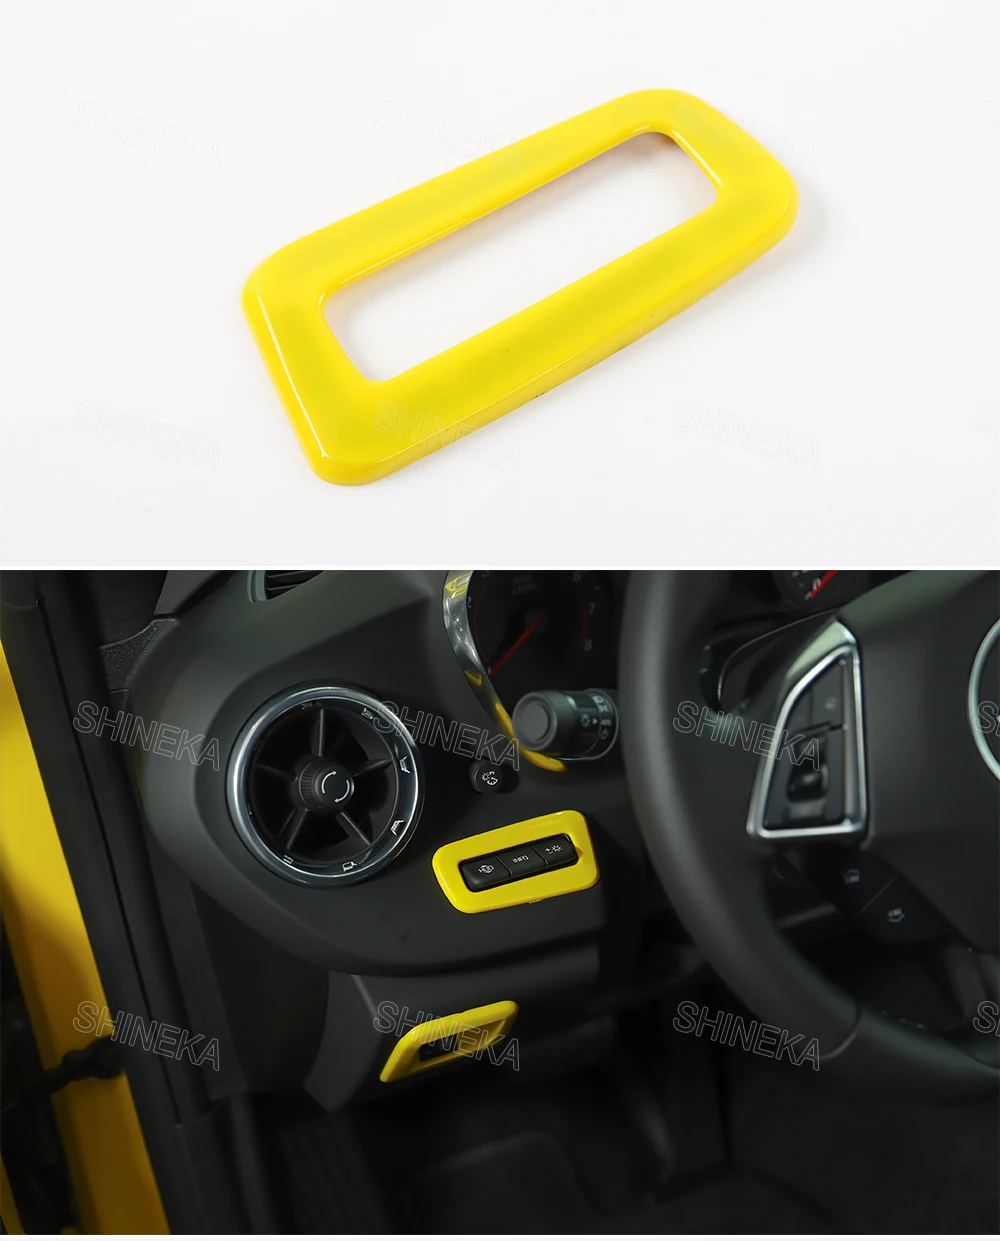 SHINEKA наборы для украшения интерьера автомобиля головы вверх дисплей переключатели управления крышка панель ободка фары рамка 6th Gen для Chevy Camaro